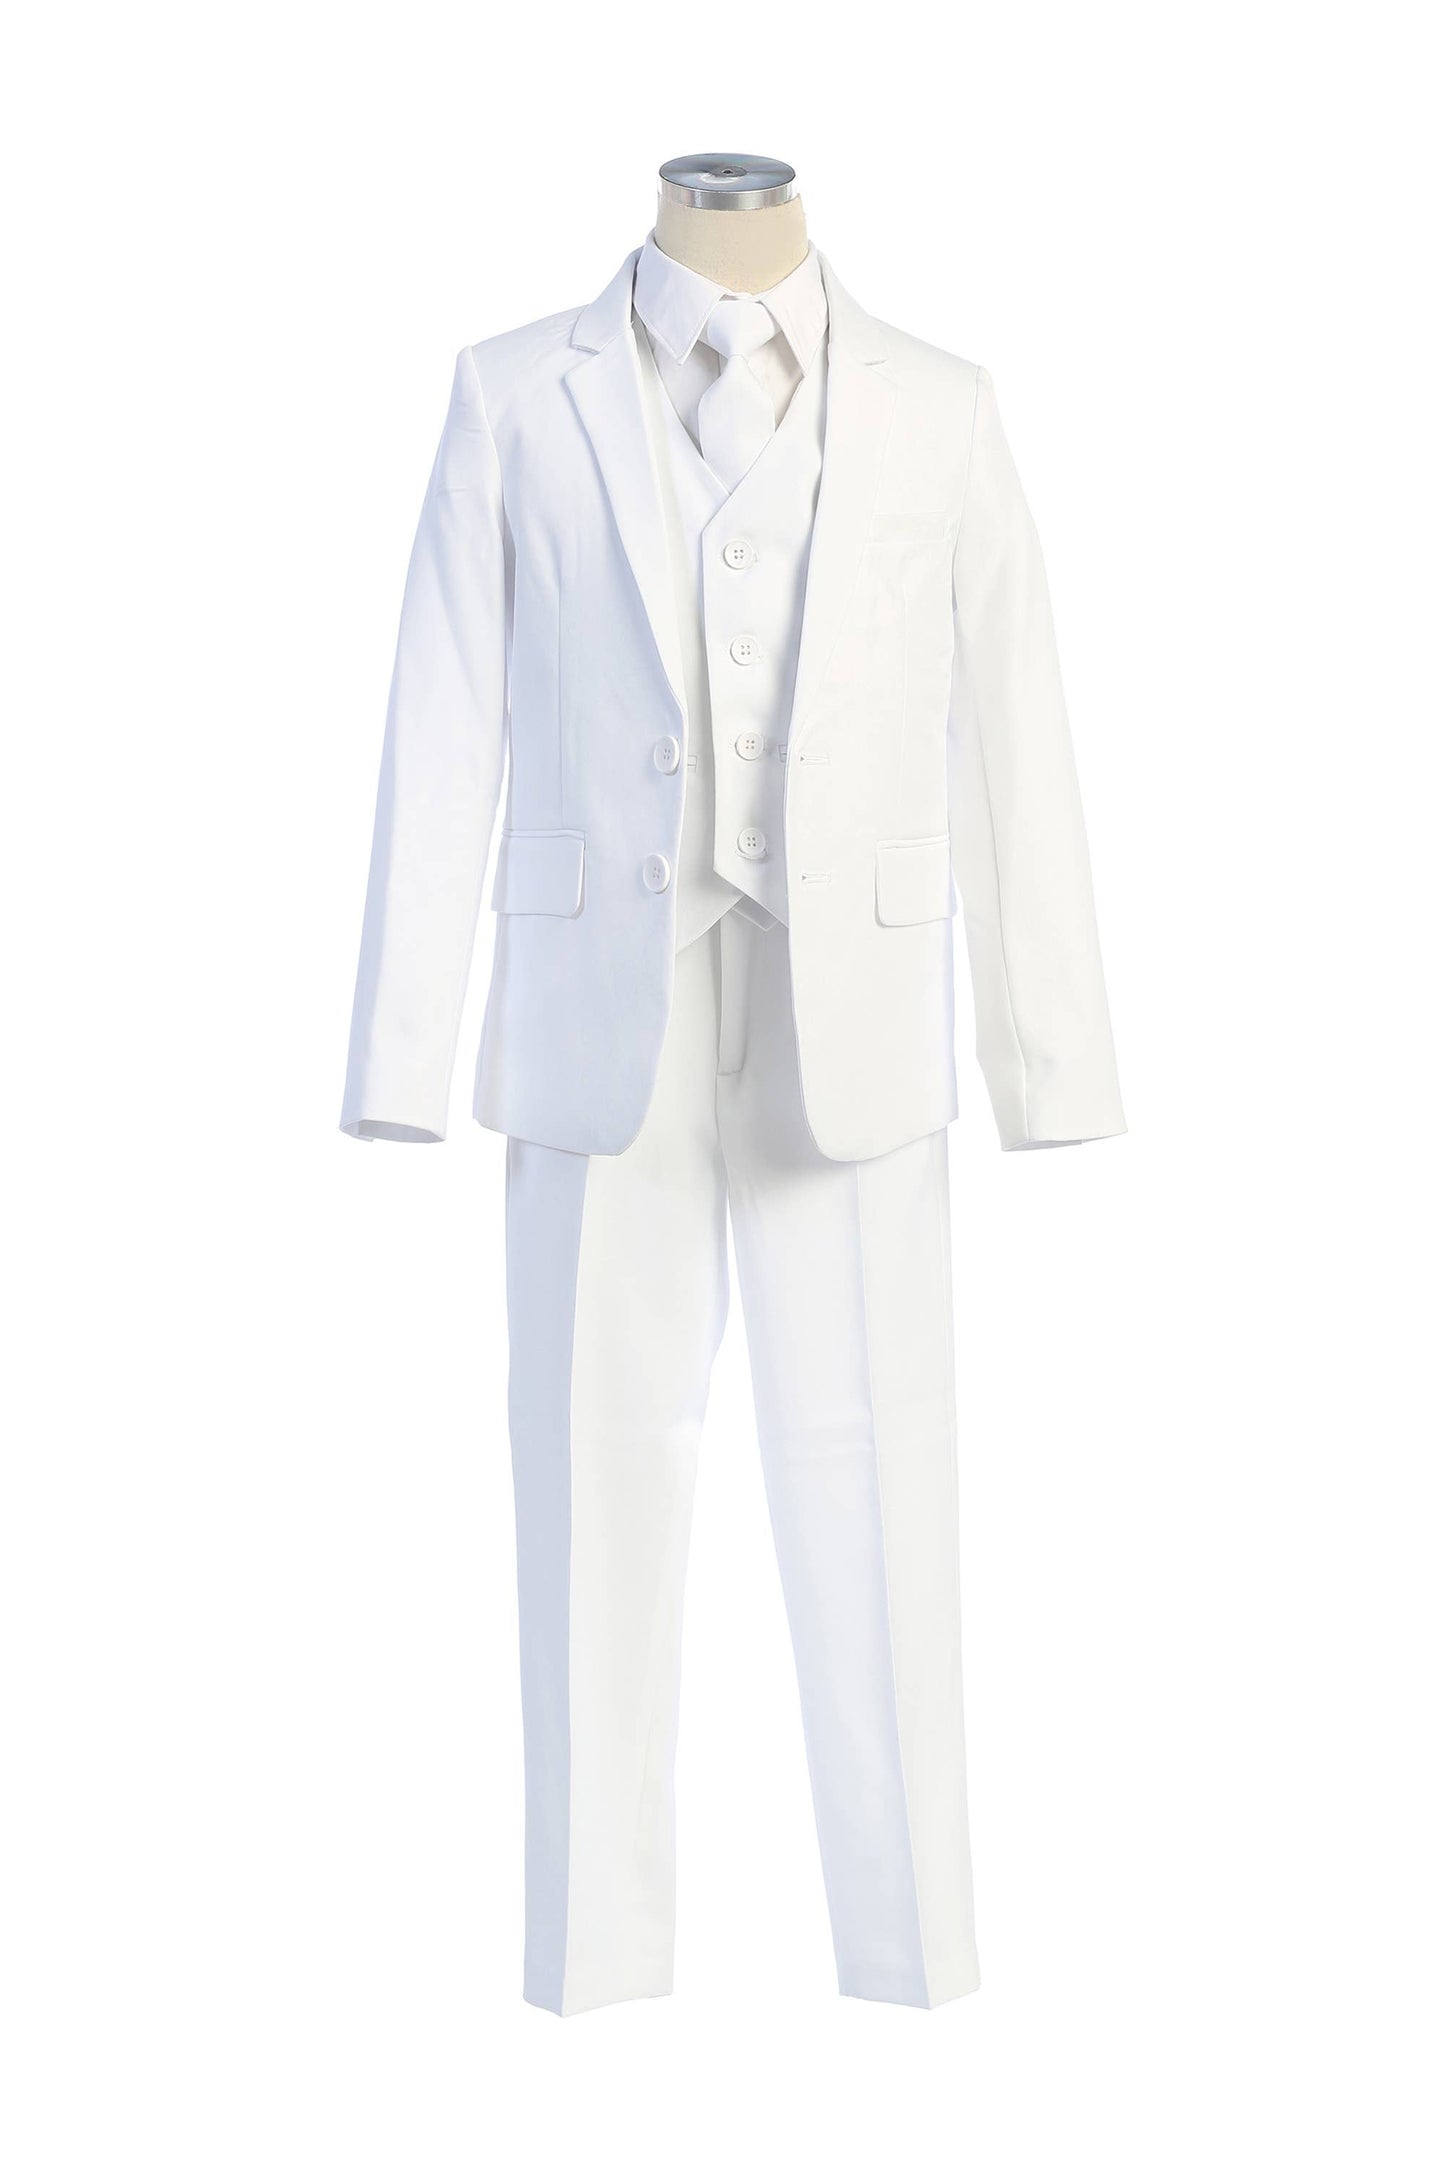 SKM140 - 5 piece 2 button boys suit set